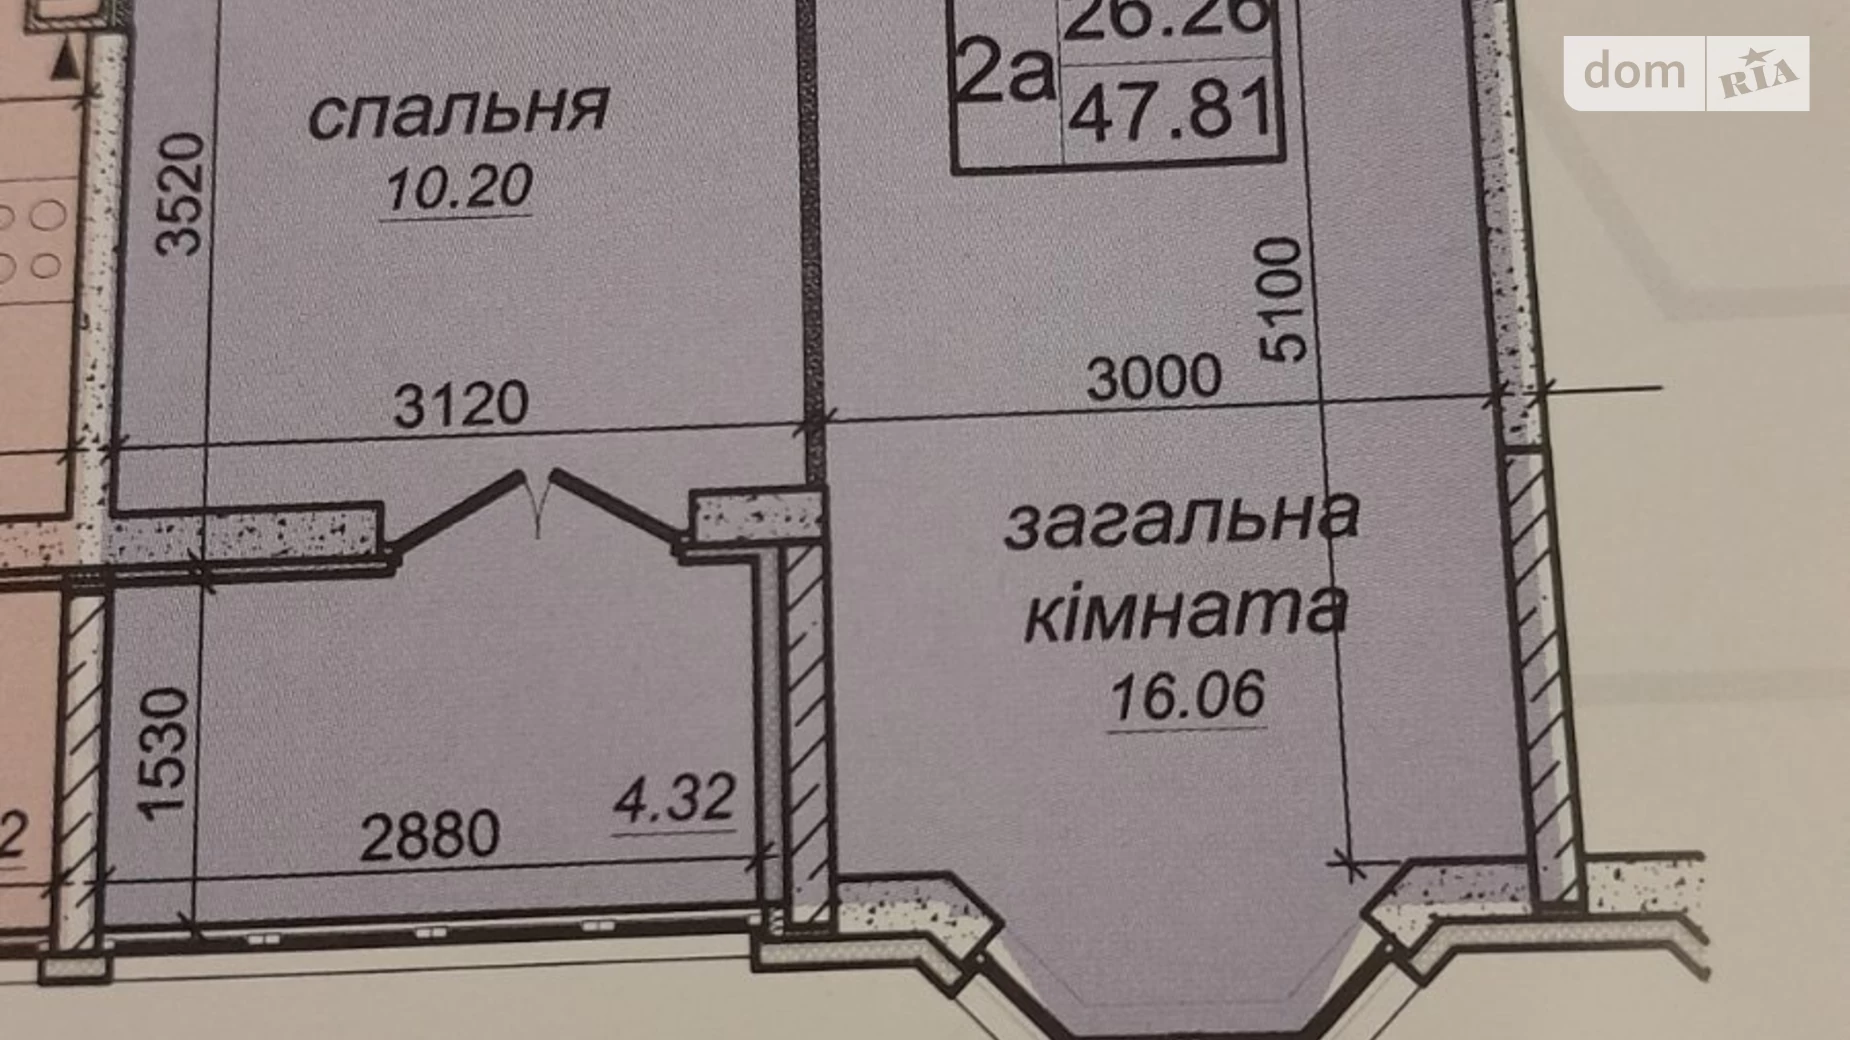 Продається 1-кімнатна квартира 47.81 кв. м у Новосілках, вул. Приміська